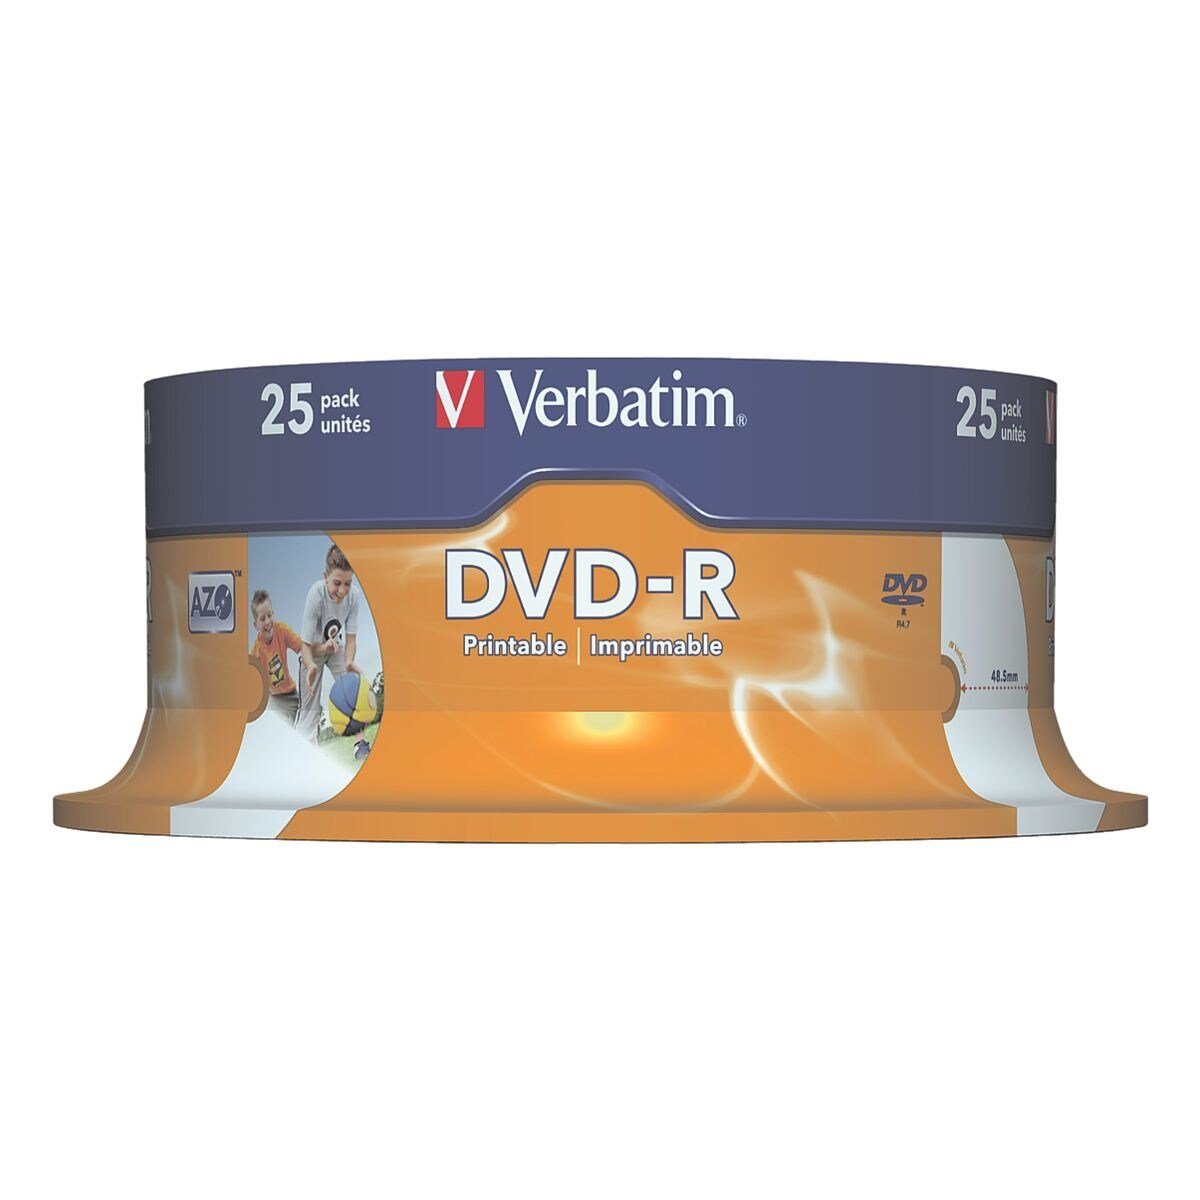 Verbatim DVD-Rohling Printable DVD-R, 4,7 GB, bedruckbar, widerstandsfähig gegen Wasser und Feuchtigkeit